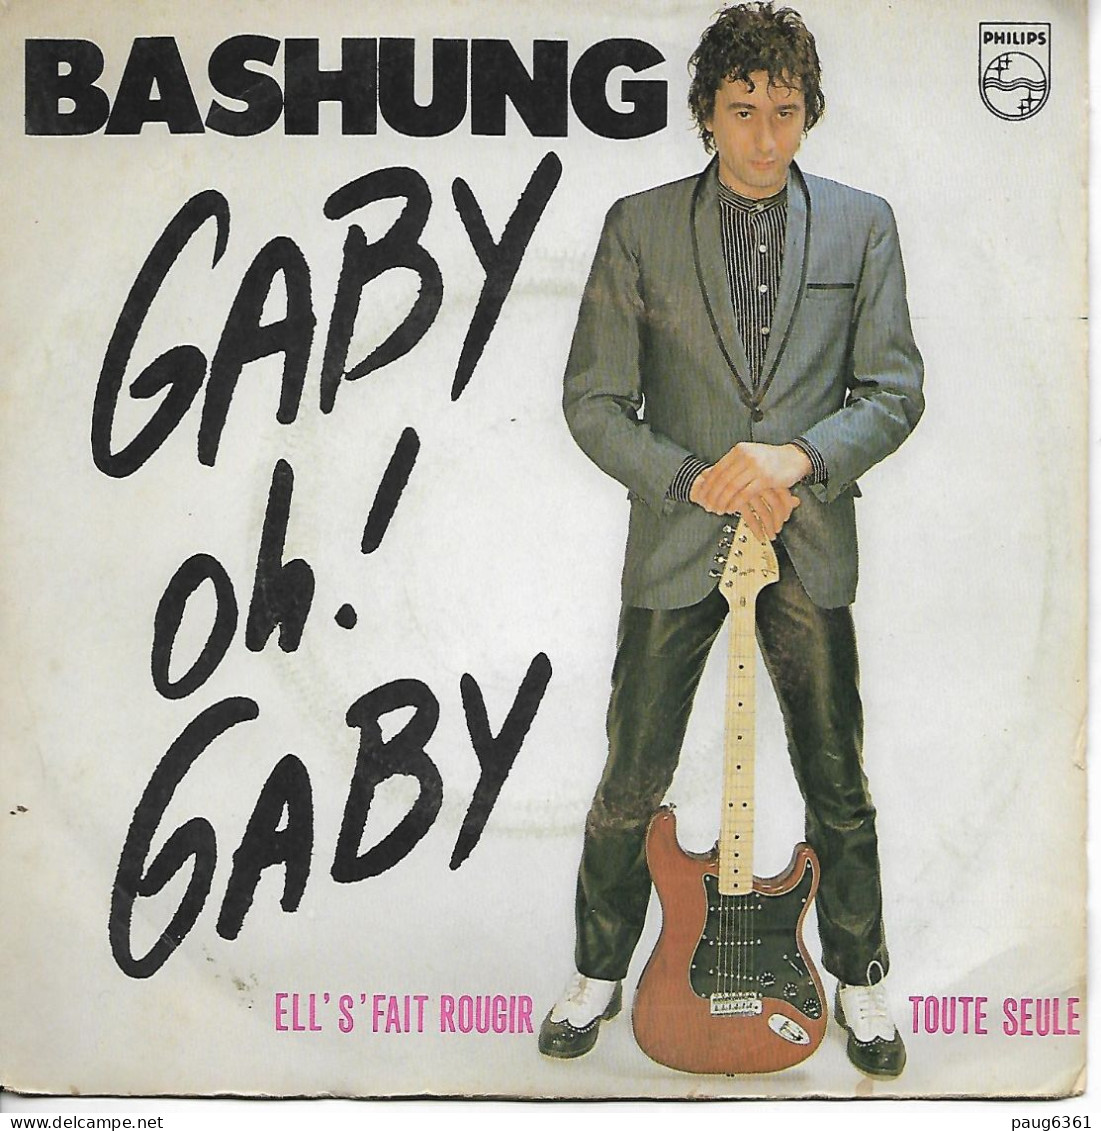 Bashung Gaby Oh! Gaby - Ell's'fait Rougir Toute Seule - Philips - 6172 310 PG 100 - Phonogram  BON ETAT VG - Autres - Musique Française